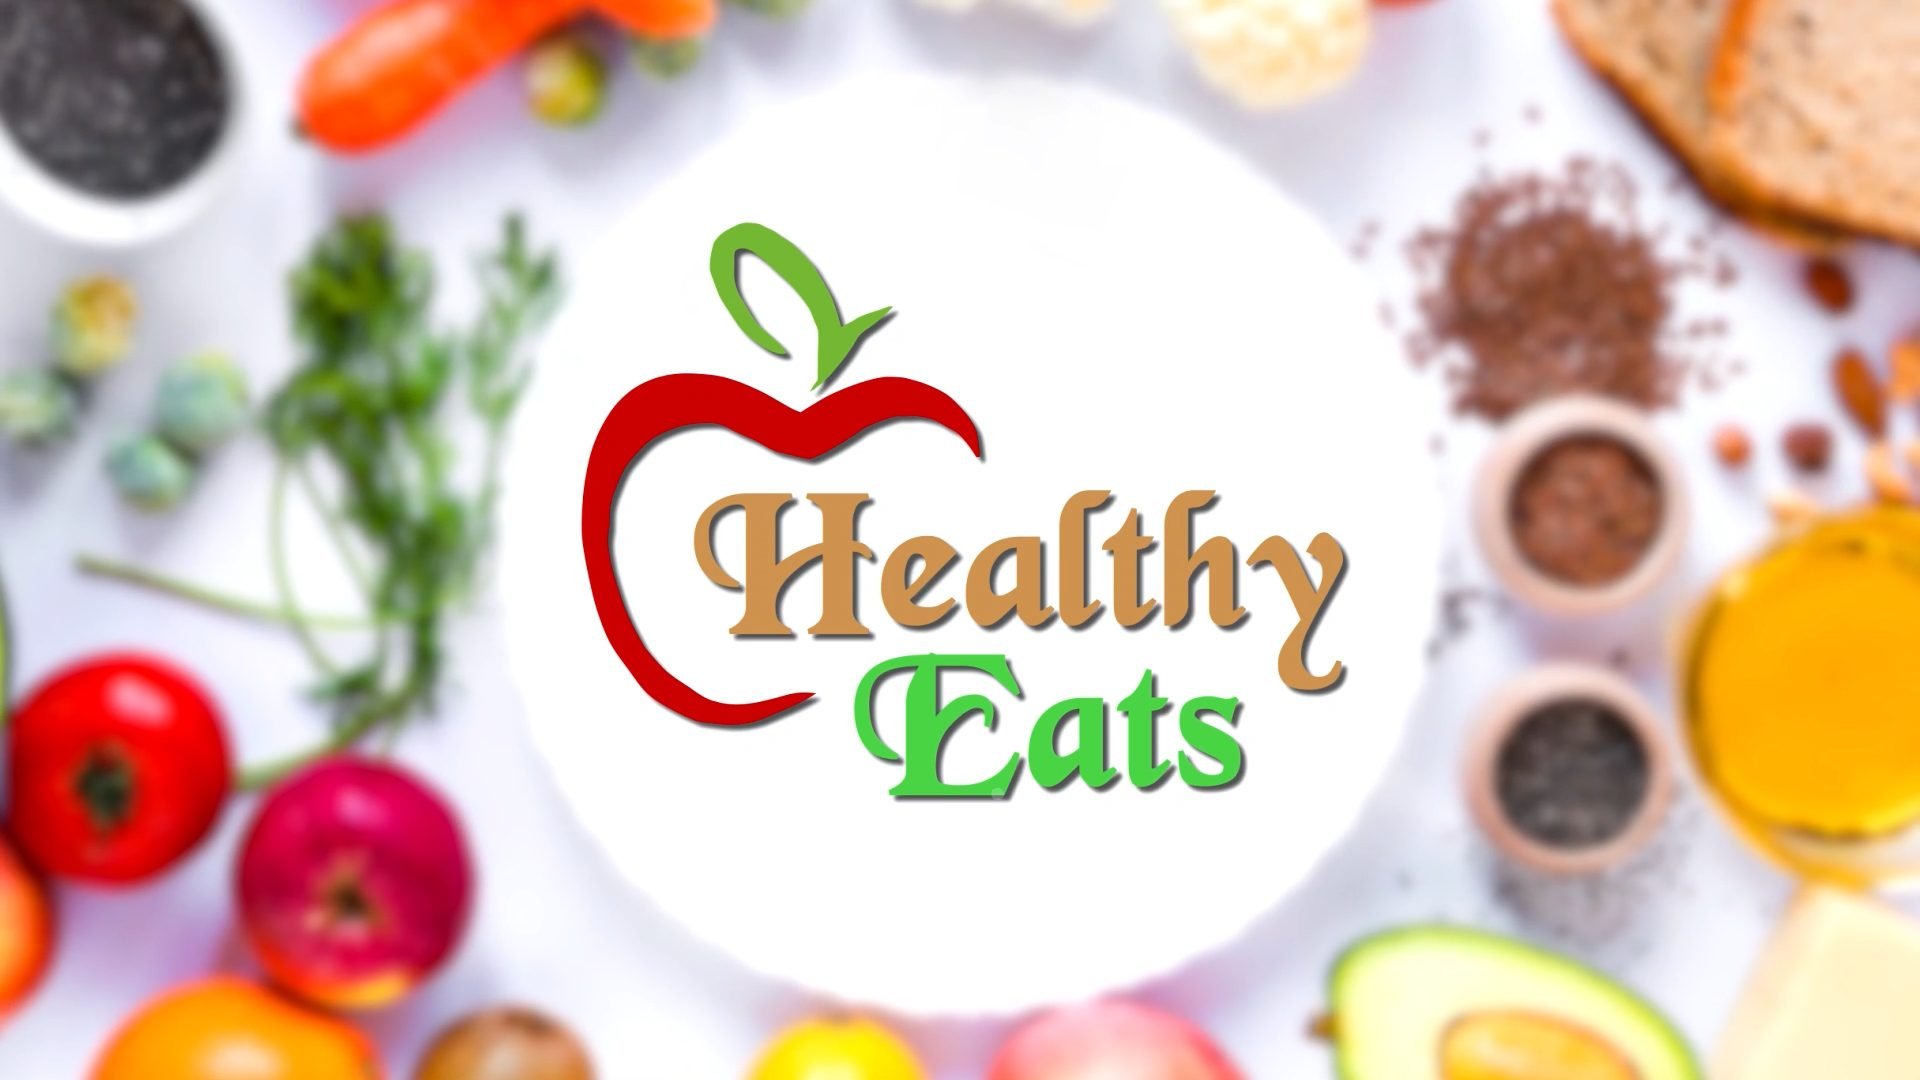 Healthy eats title